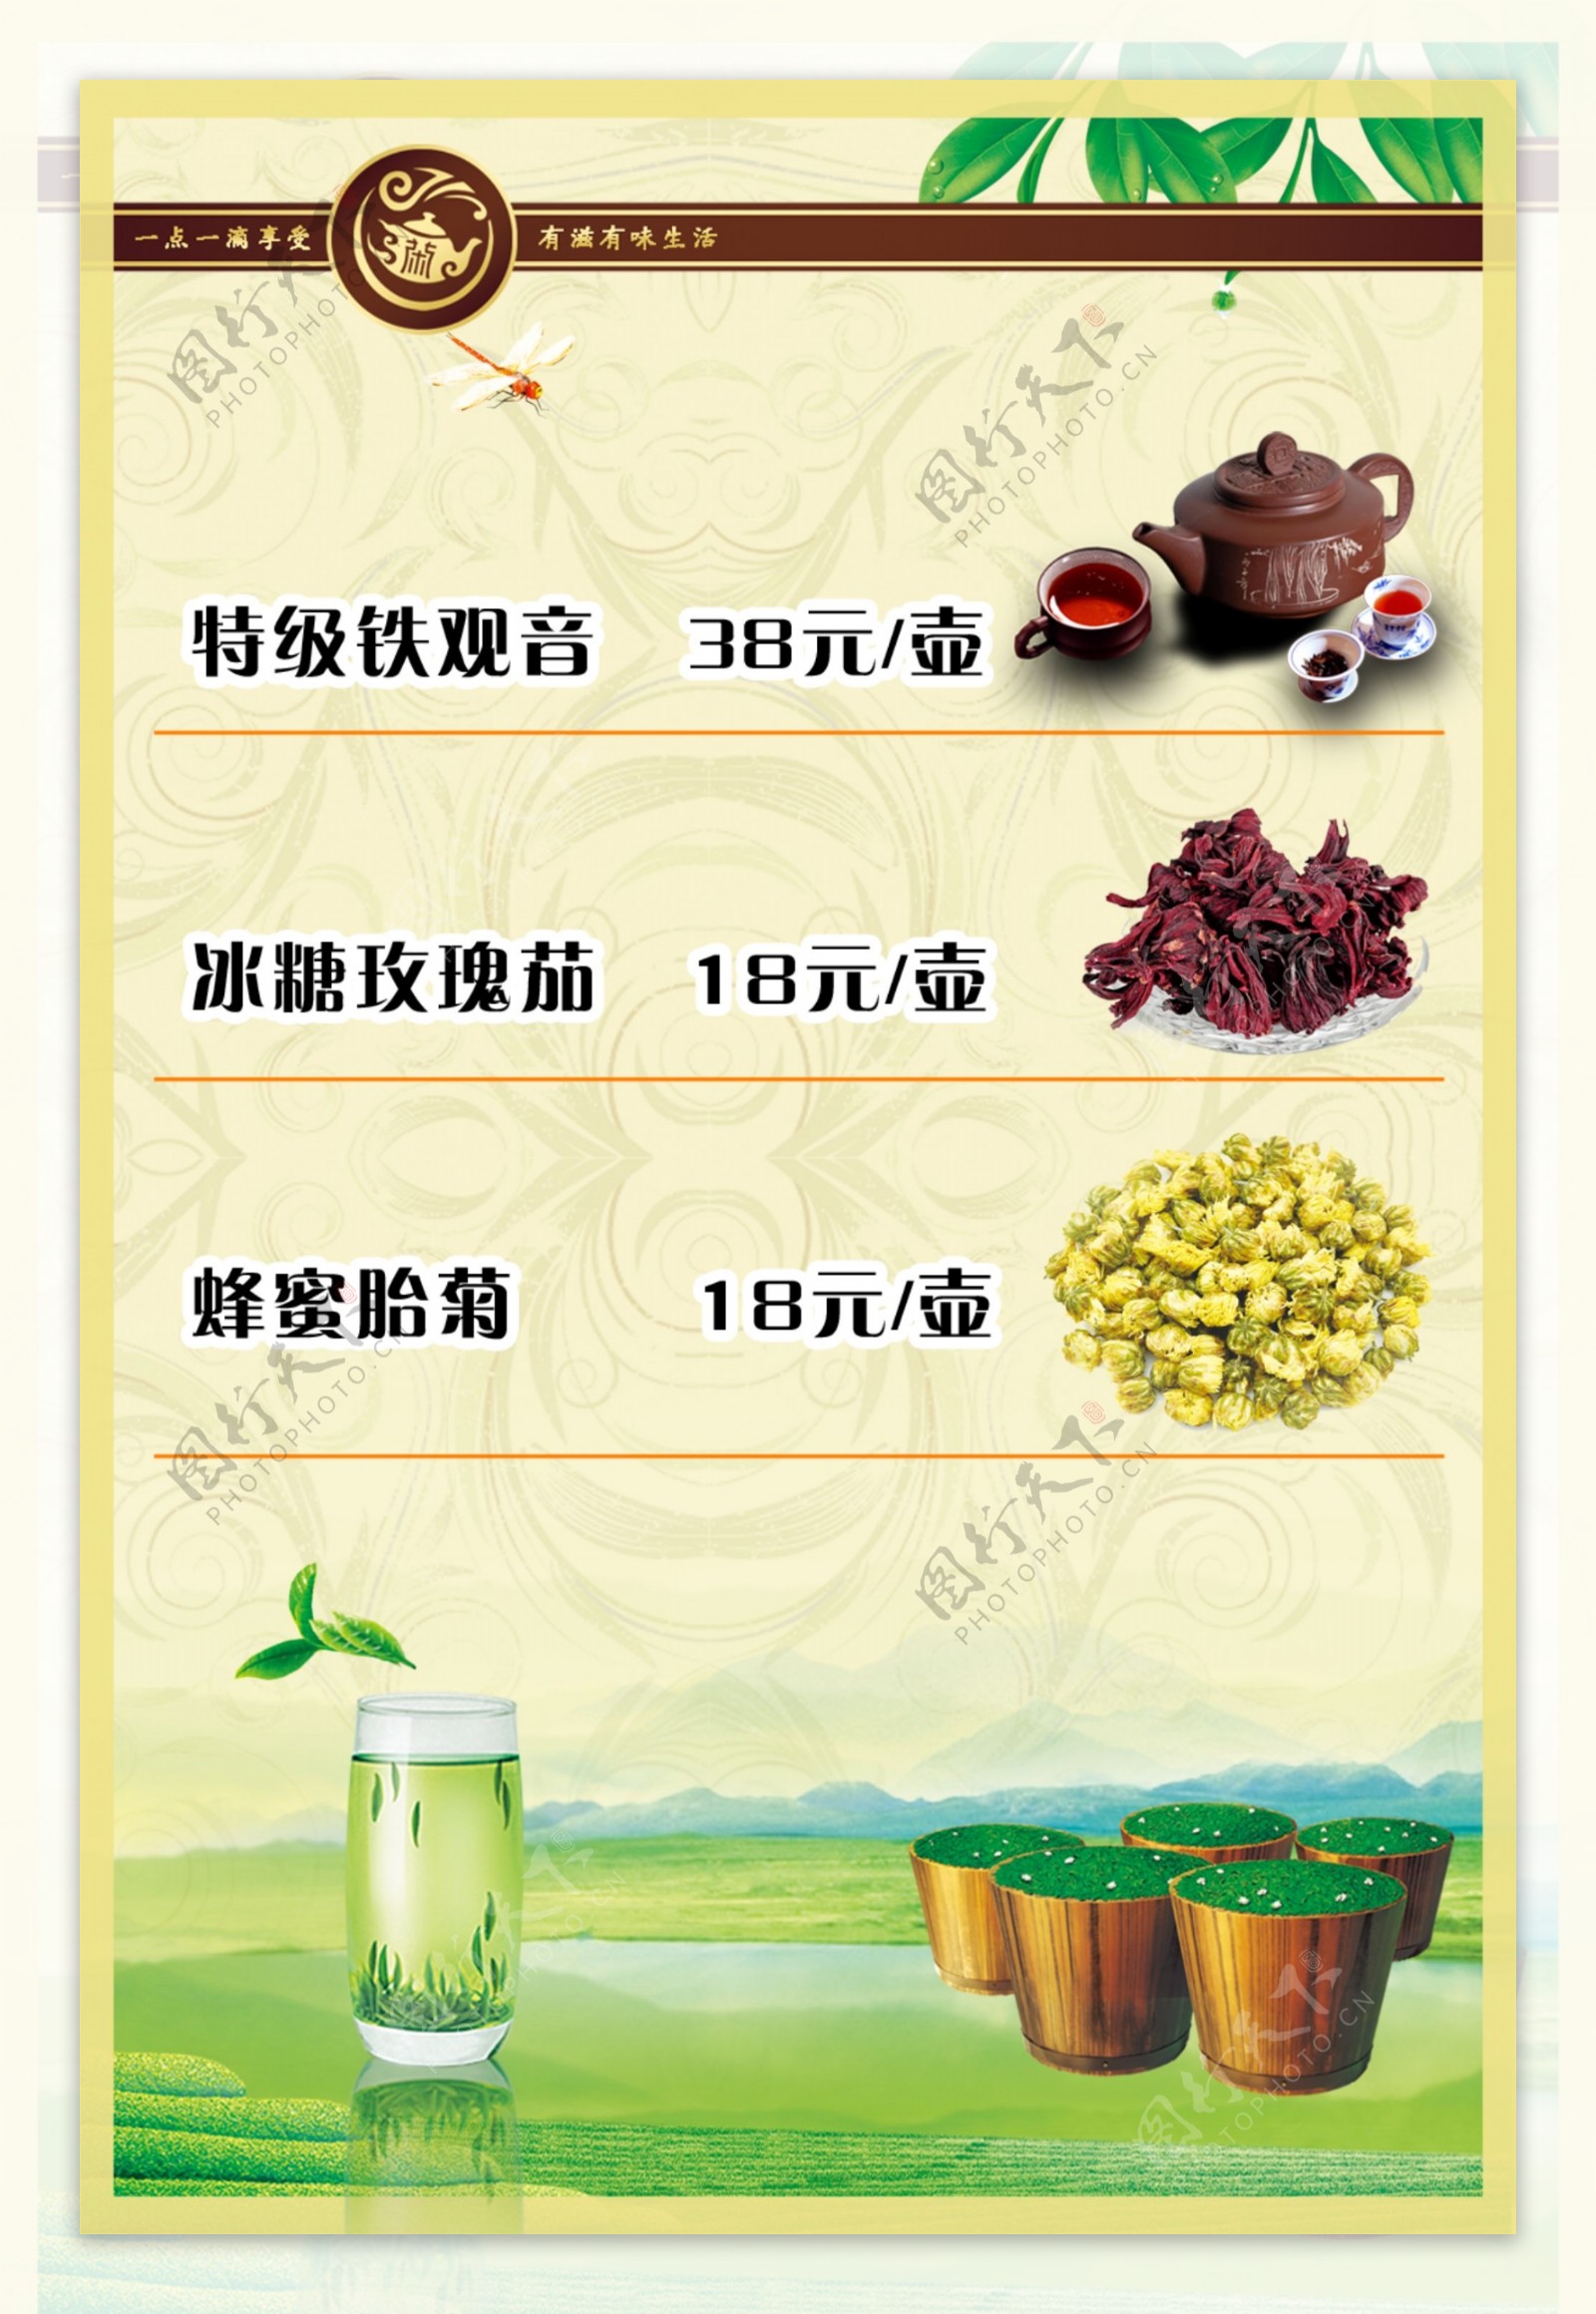 会所茶水菜单图片